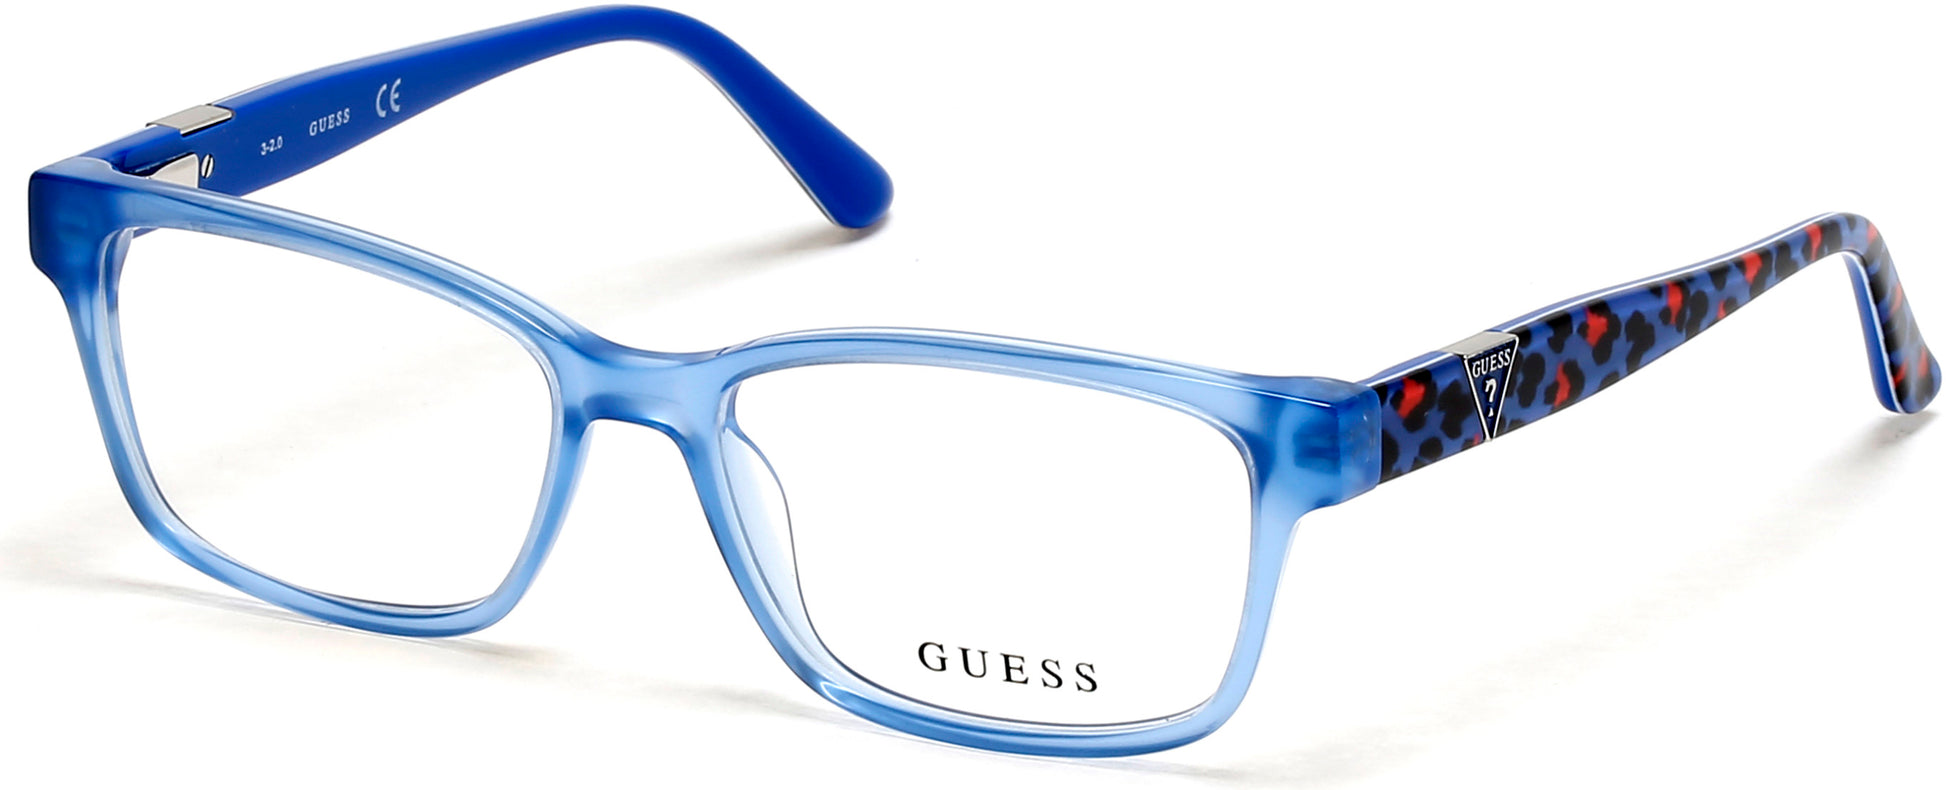 Guess GU9201 Square Eyeglasses 090-090 - Shiny Blue